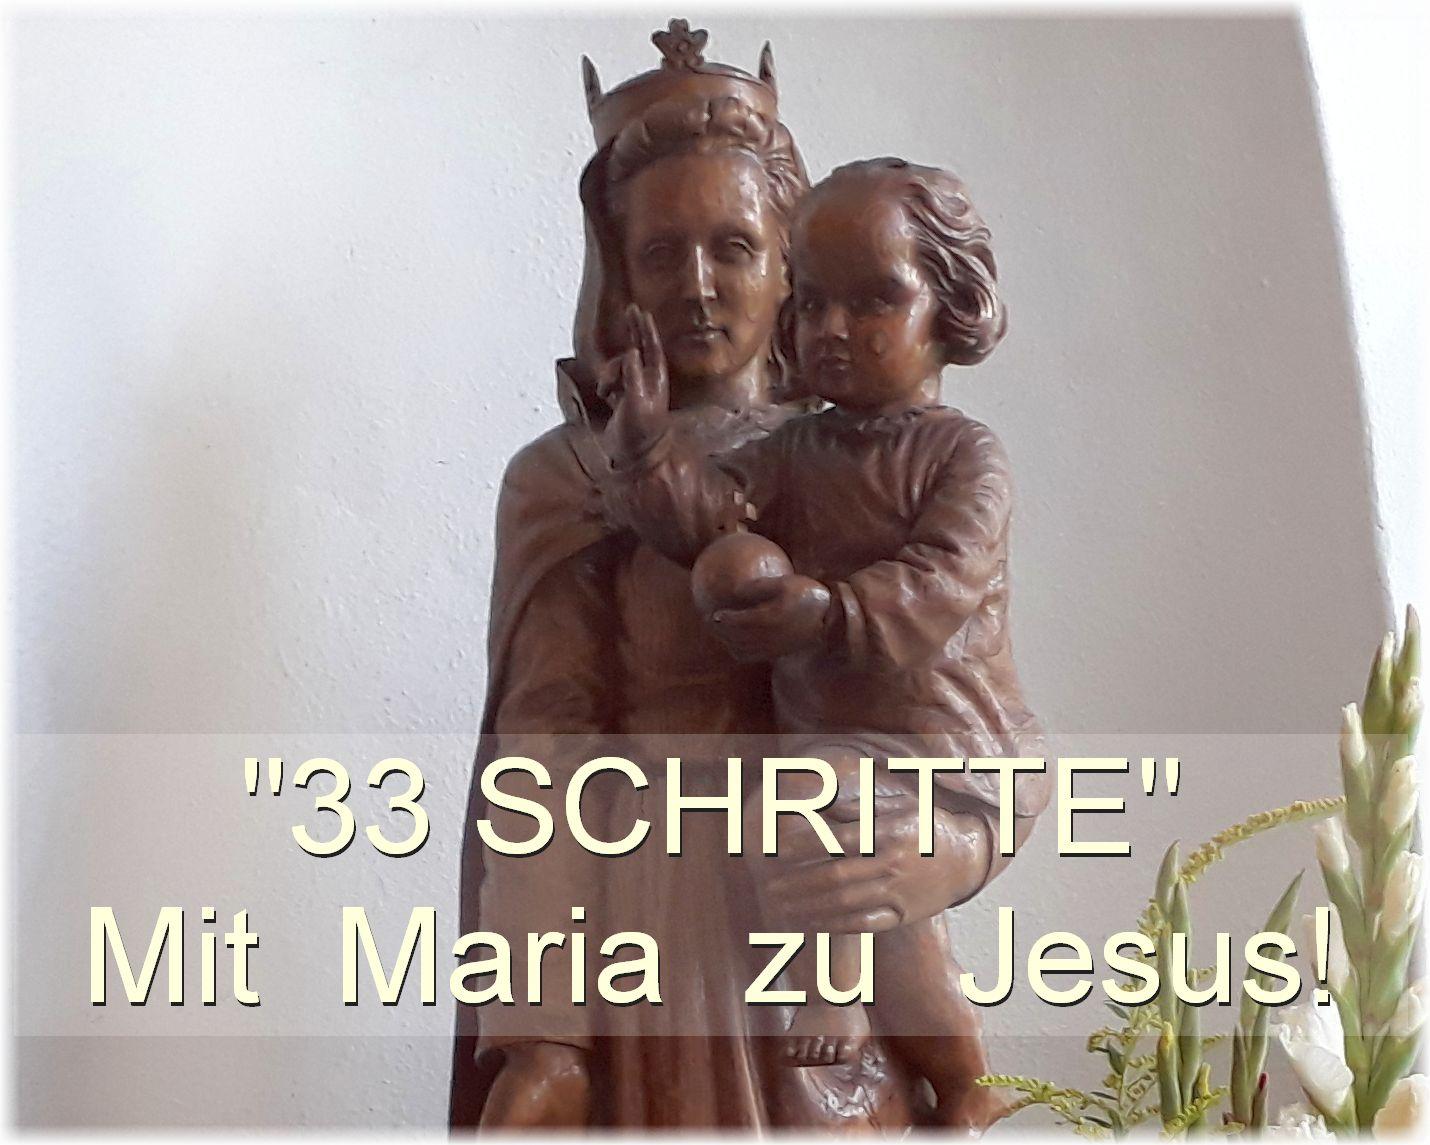 33 Schritte - Mit Maria zu Jesus (c) Kroll